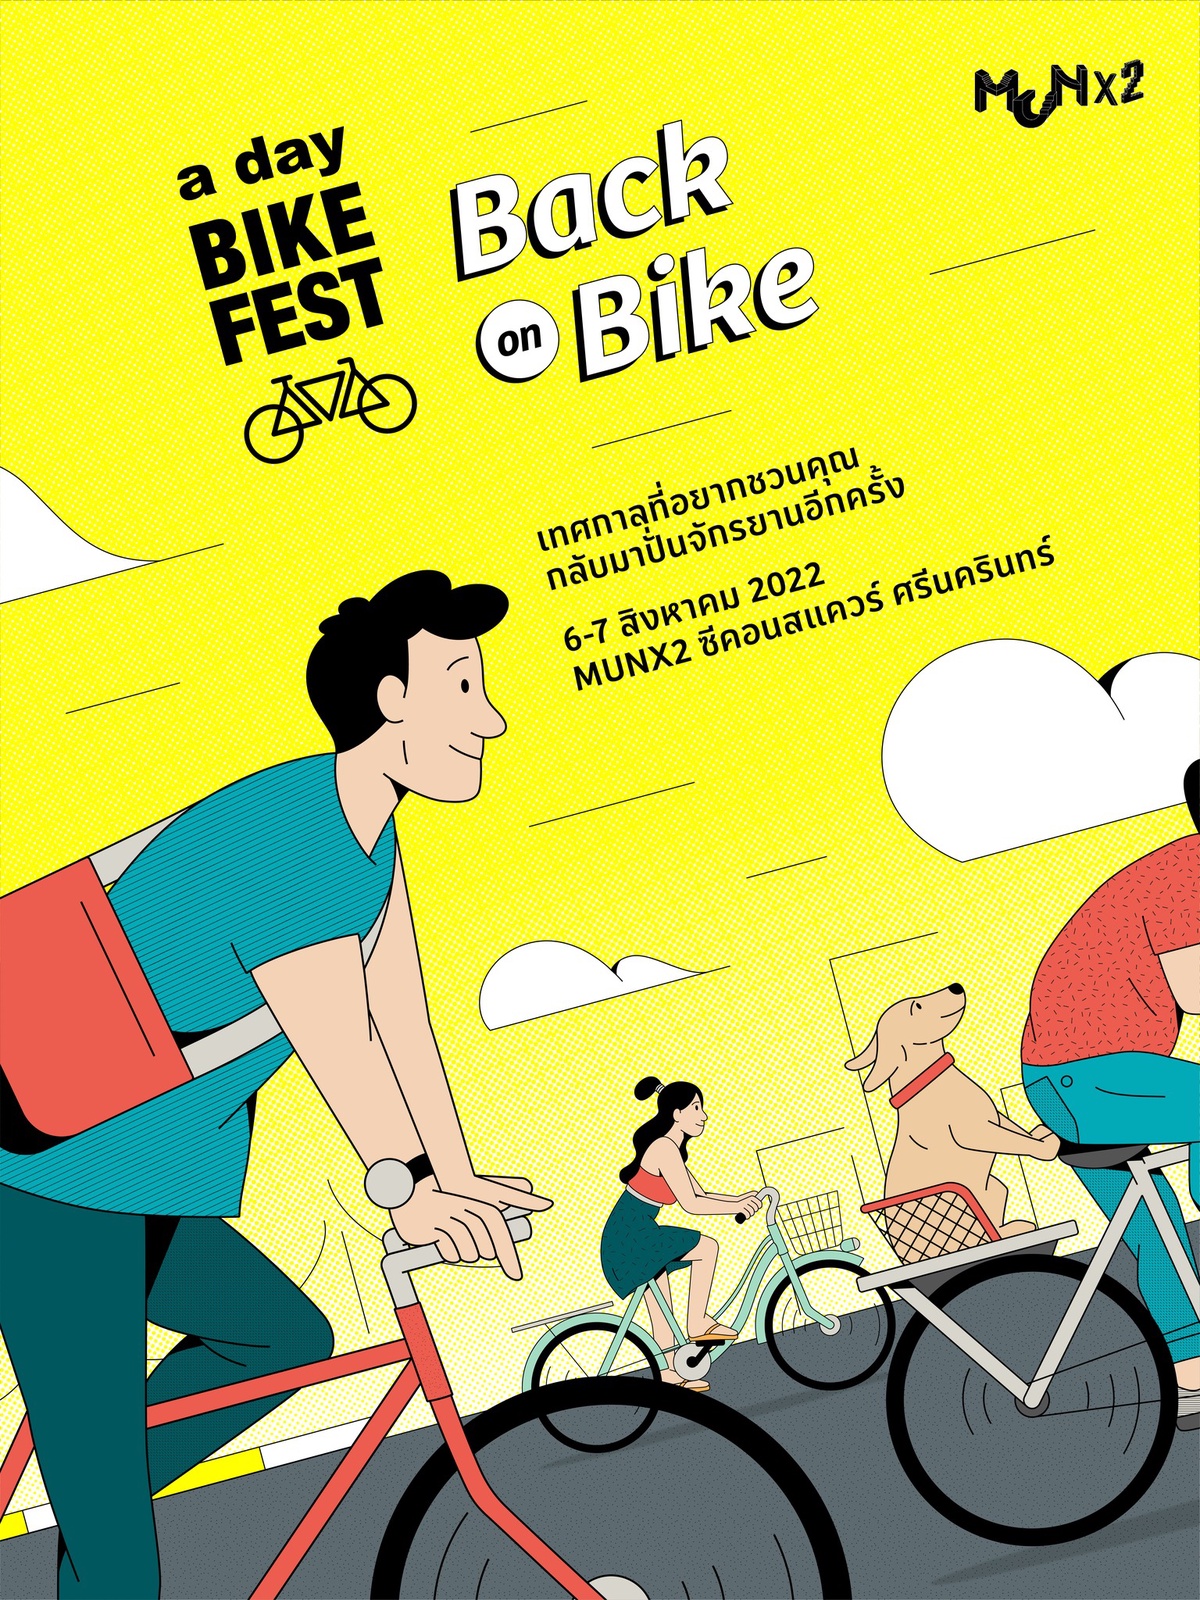 ซีคอนสแควร์ ศรีนครินทร์ ร่วมกับ a day จัดงาน a day BIKE FEST : back on bike เทศกาลที่อยากชวนคุณปั่นจักรยานอีกครั้ง